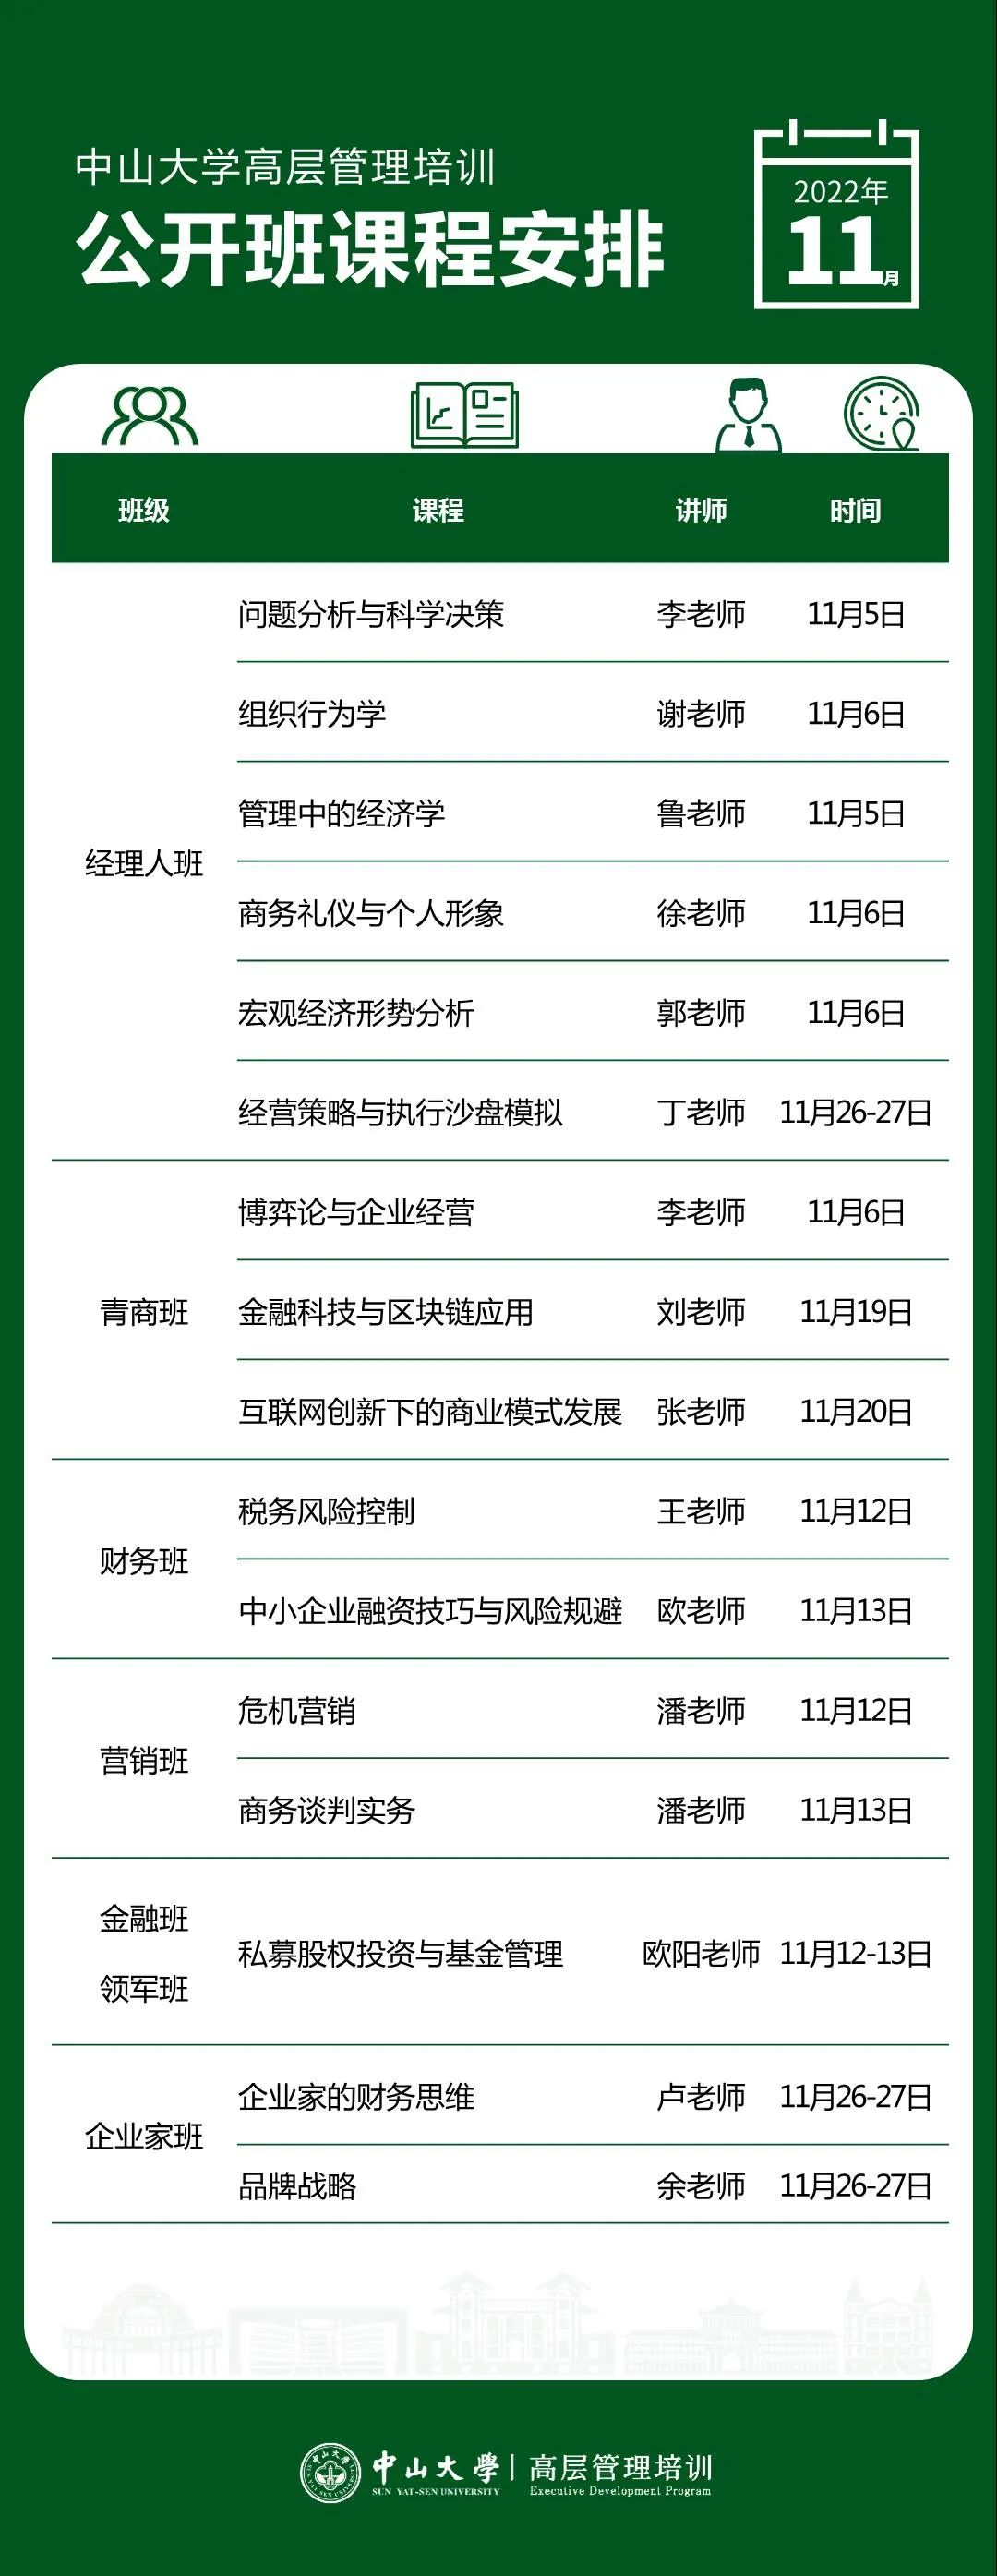 中山大学总裁班十一月公开课课程表